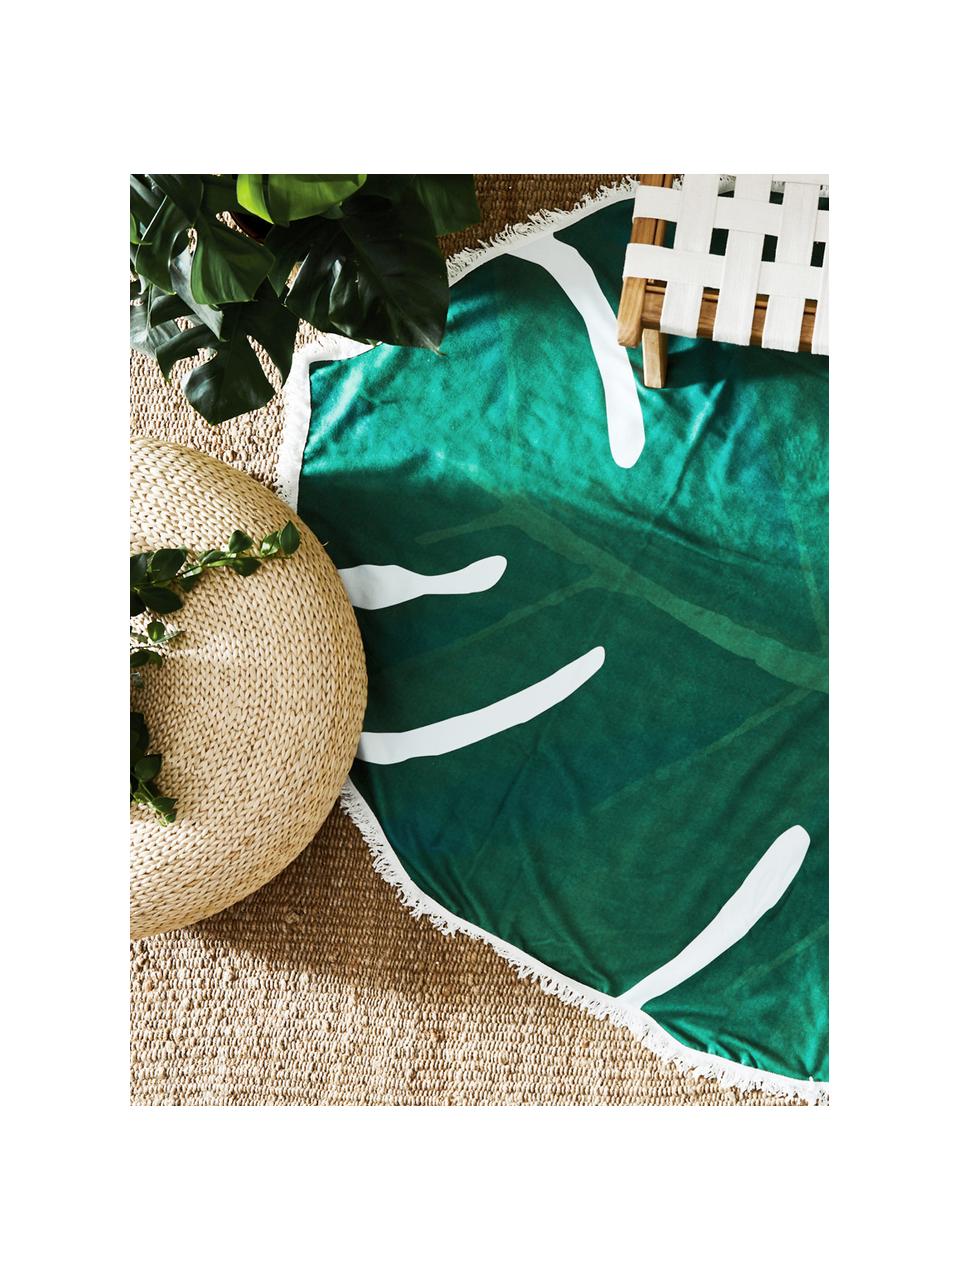 Ręcznik plażowy Leaves, 55% poliester, 45% bawełna
Bardzo niska gramatura 340 g/m², Zielony, biały, S 139 x D 150 cm